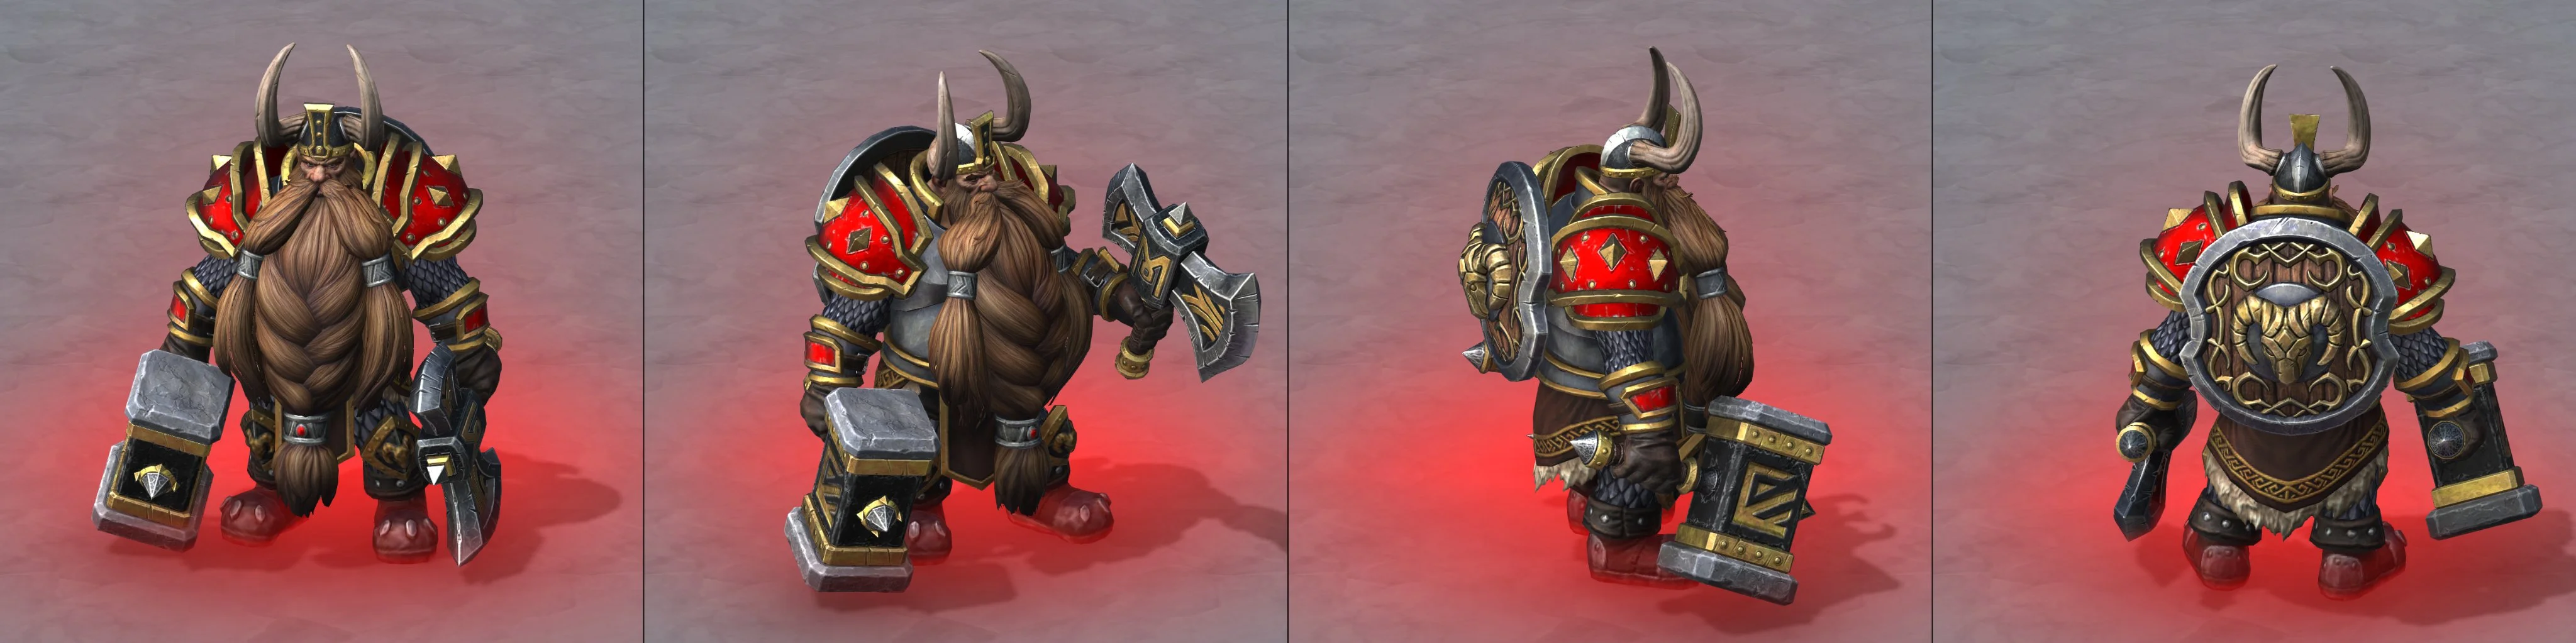 Новые утечки Warcraft III: Reforged. Как выглядят юниты и анимации [обновлено] - фото 7